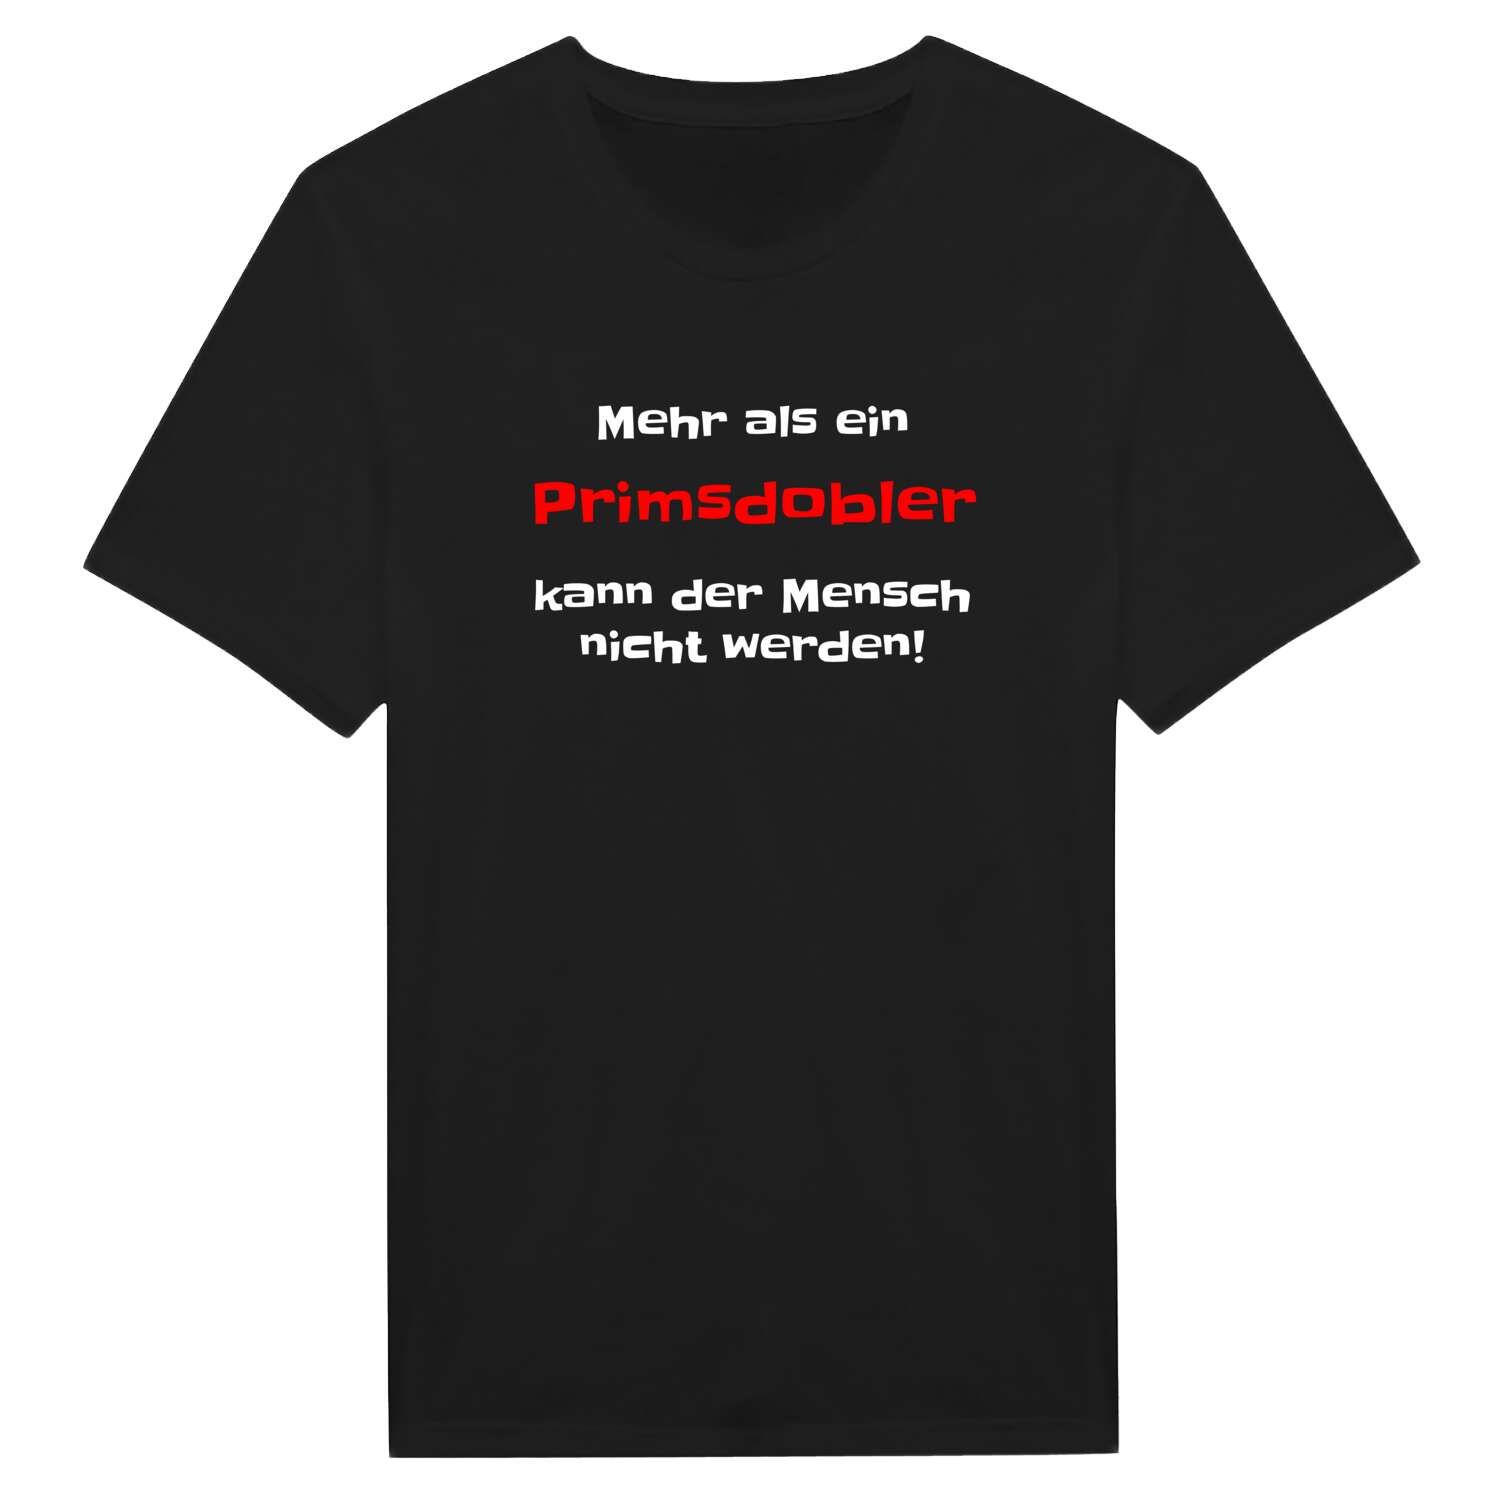 Primsdobl T-Shirt »Mehr als ein«